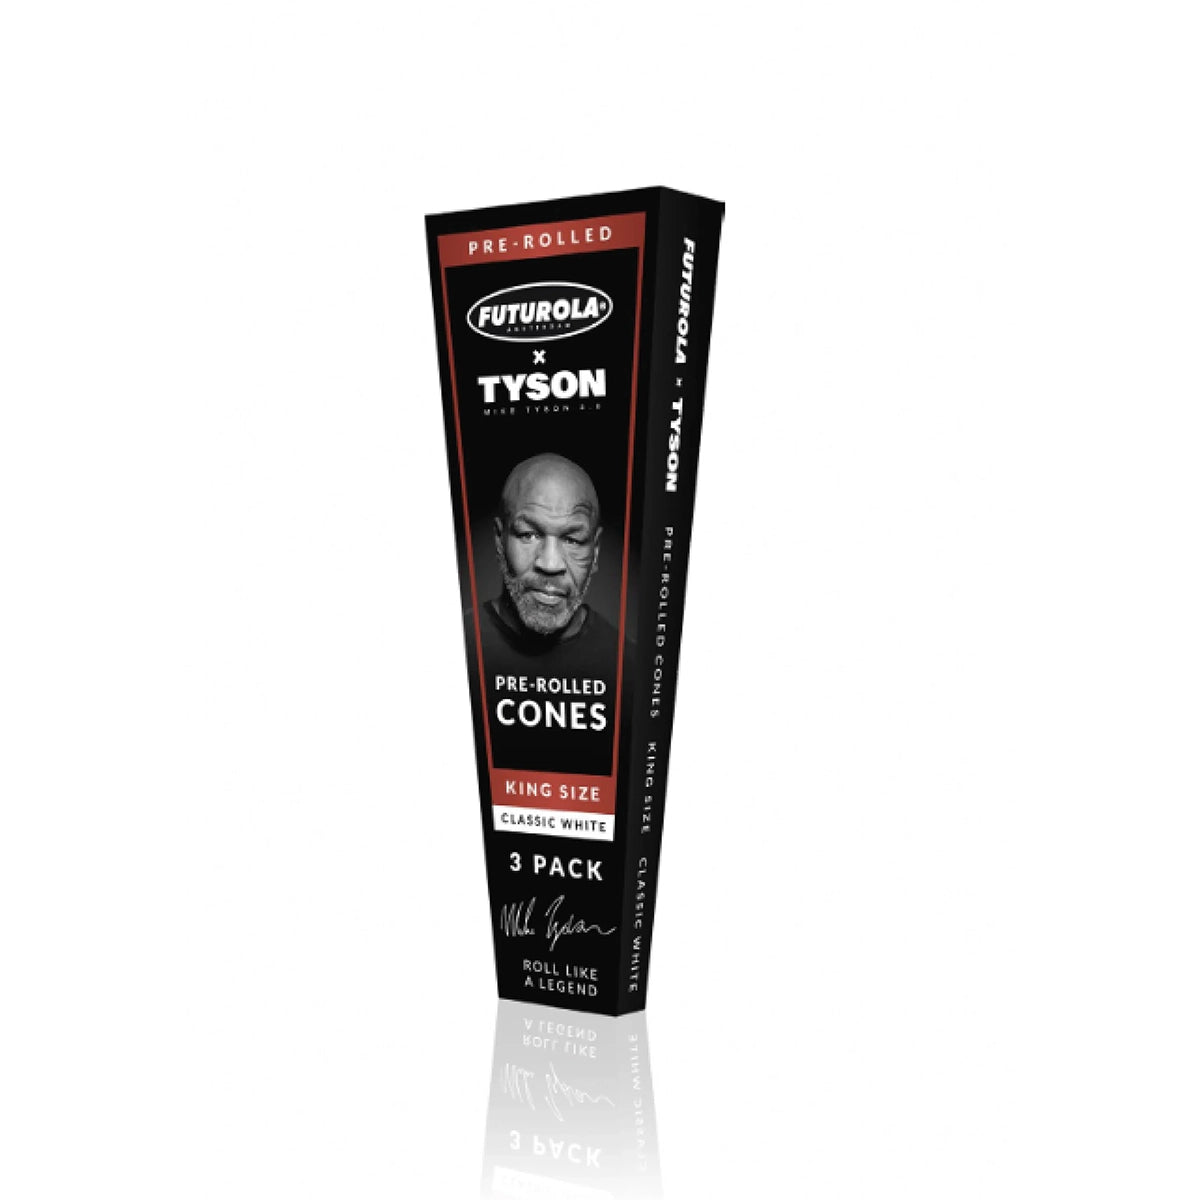 Mike Tyson "Tyson 2.0 x Futurola Pre-Rolled Cones 3-Pack"